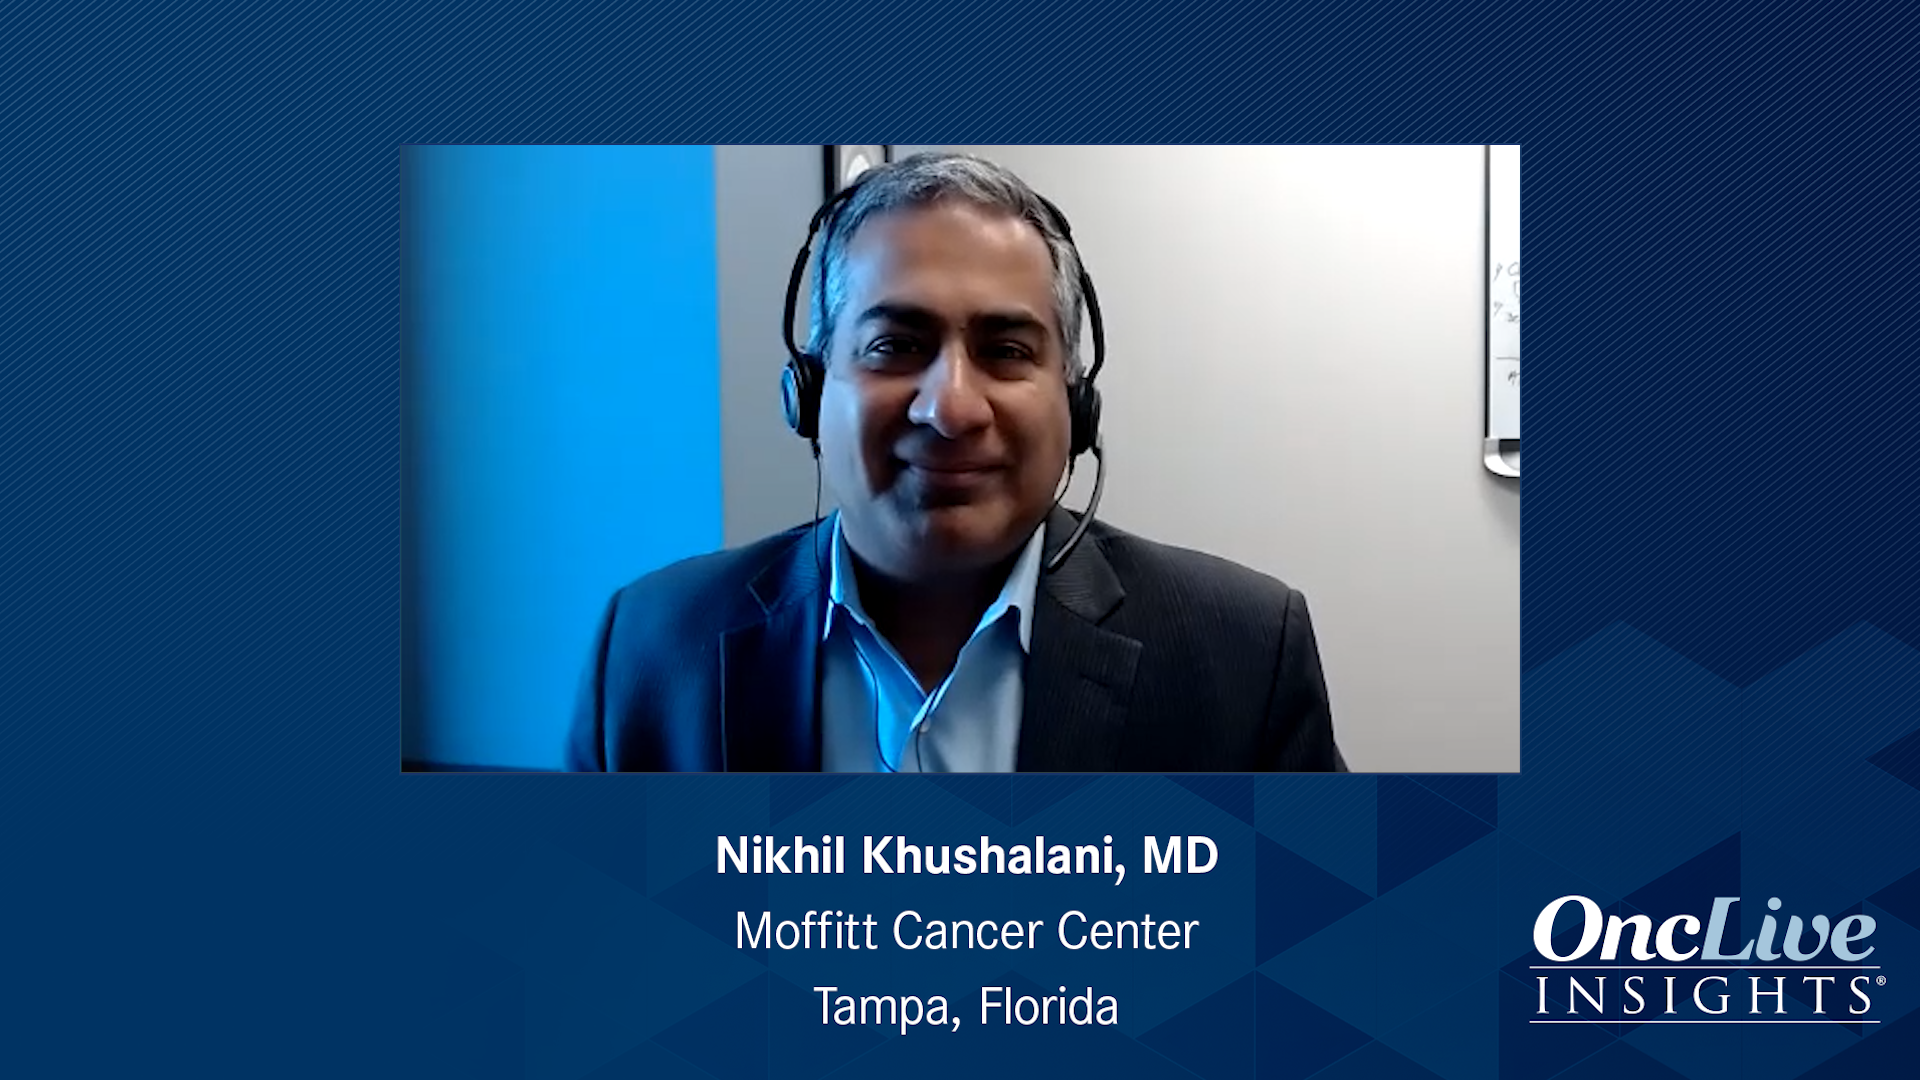 Nikhil Khushalani, MD, an expert on skin cancer